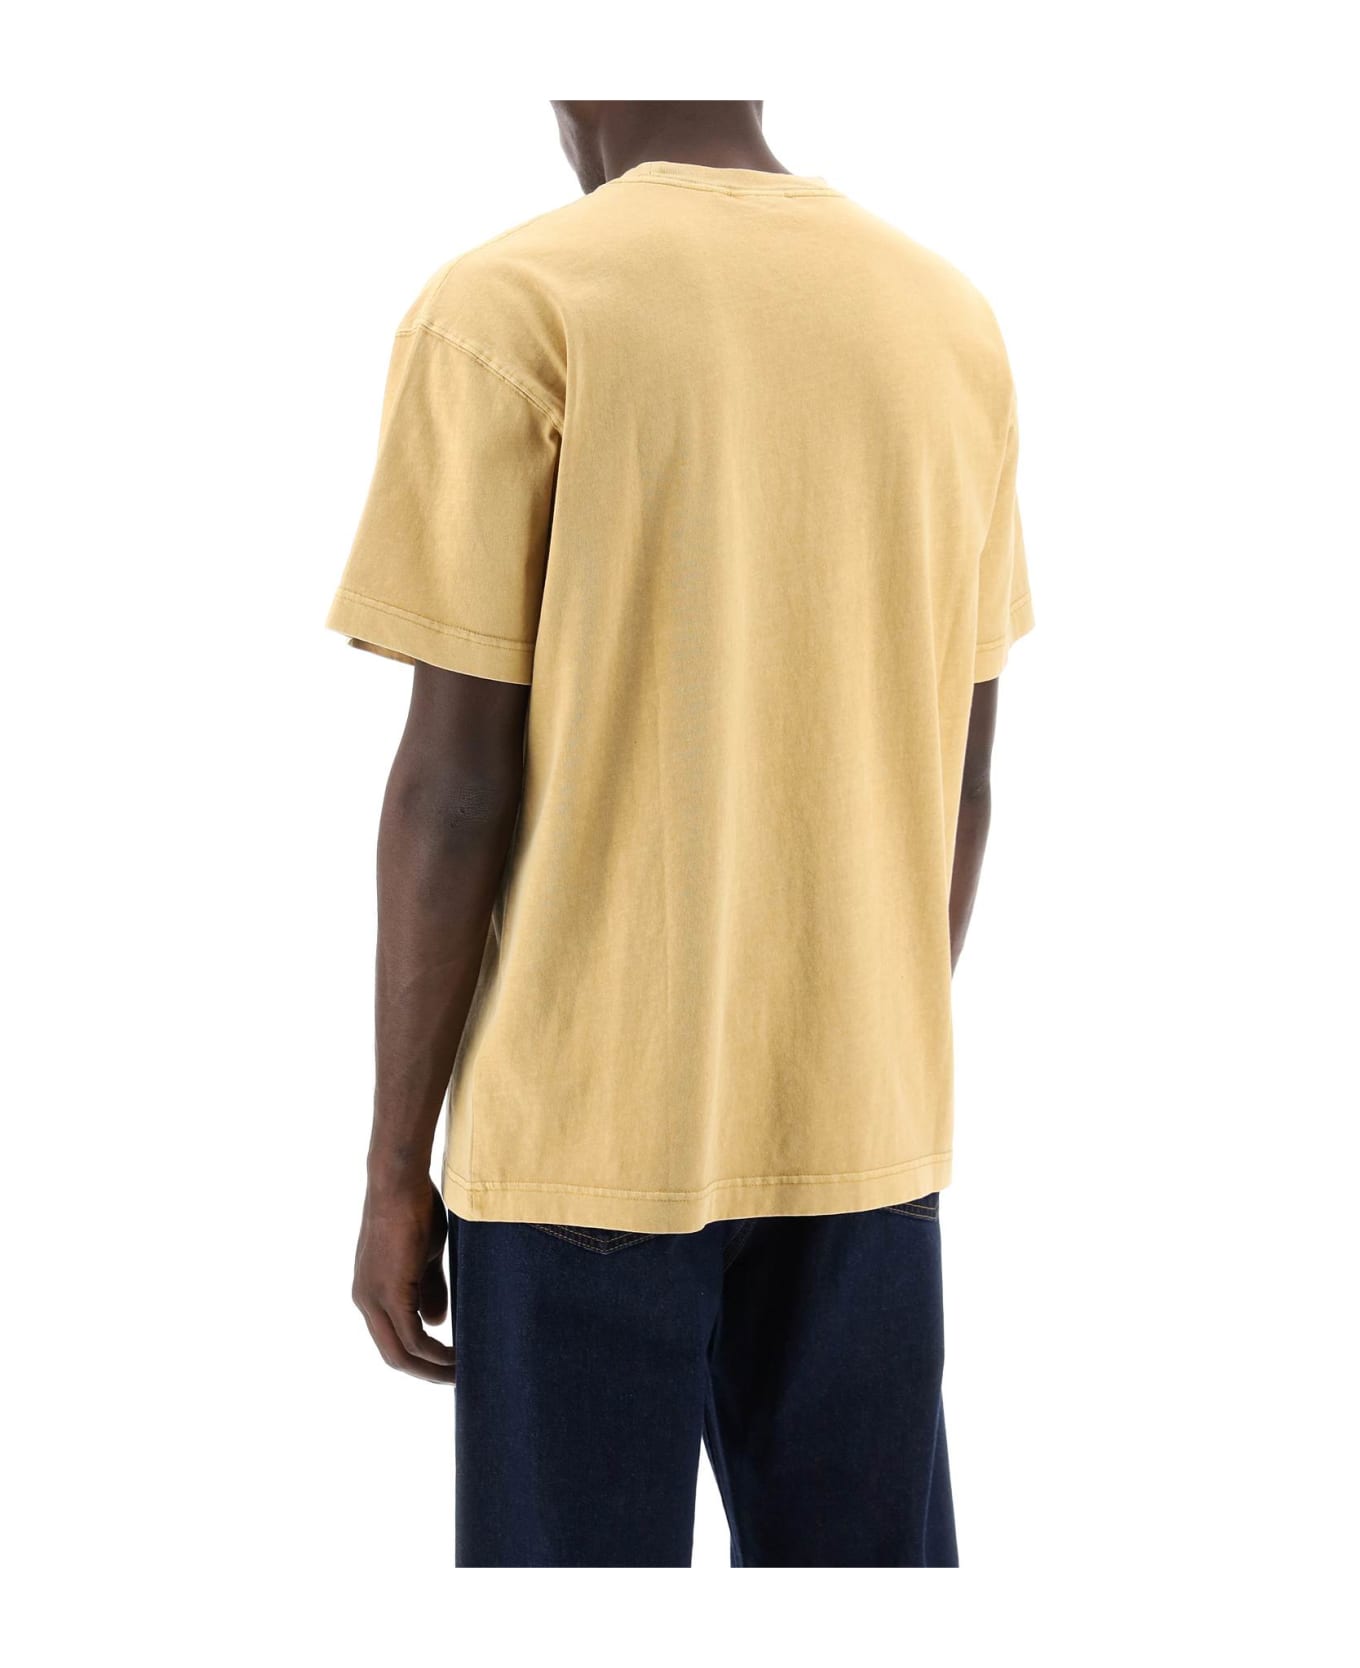 Carhartt Nelson T-shirt - BOURBON (Yellow)